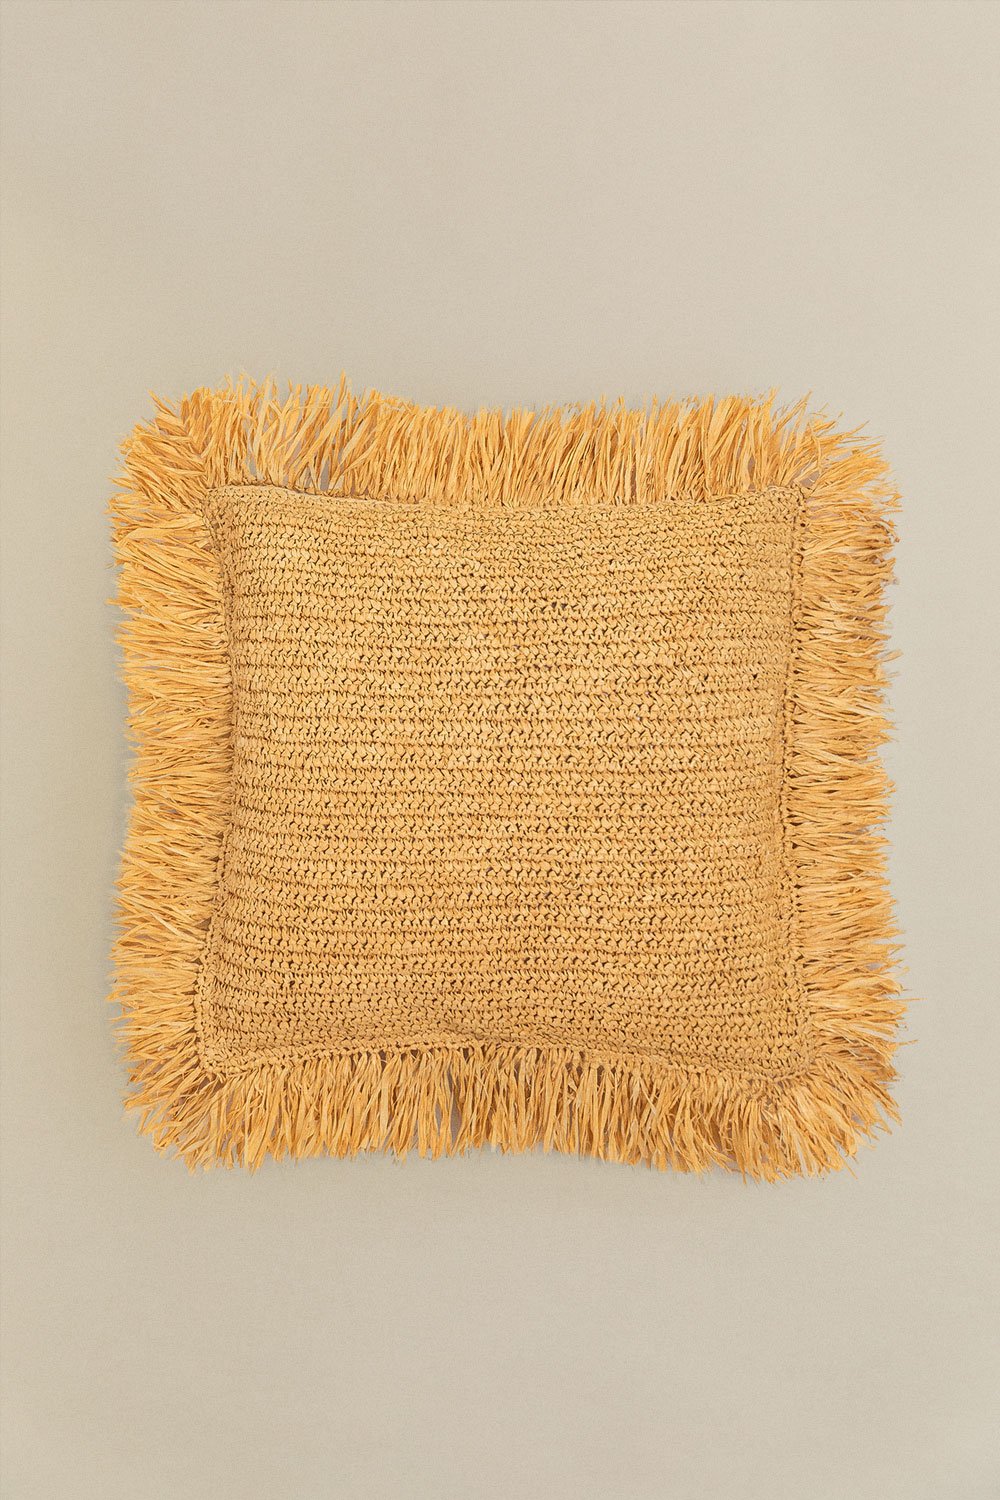 Quadratisches Kissen aus geflochtenem Bast (45x45 cm) Doncka, Galeriebild 1